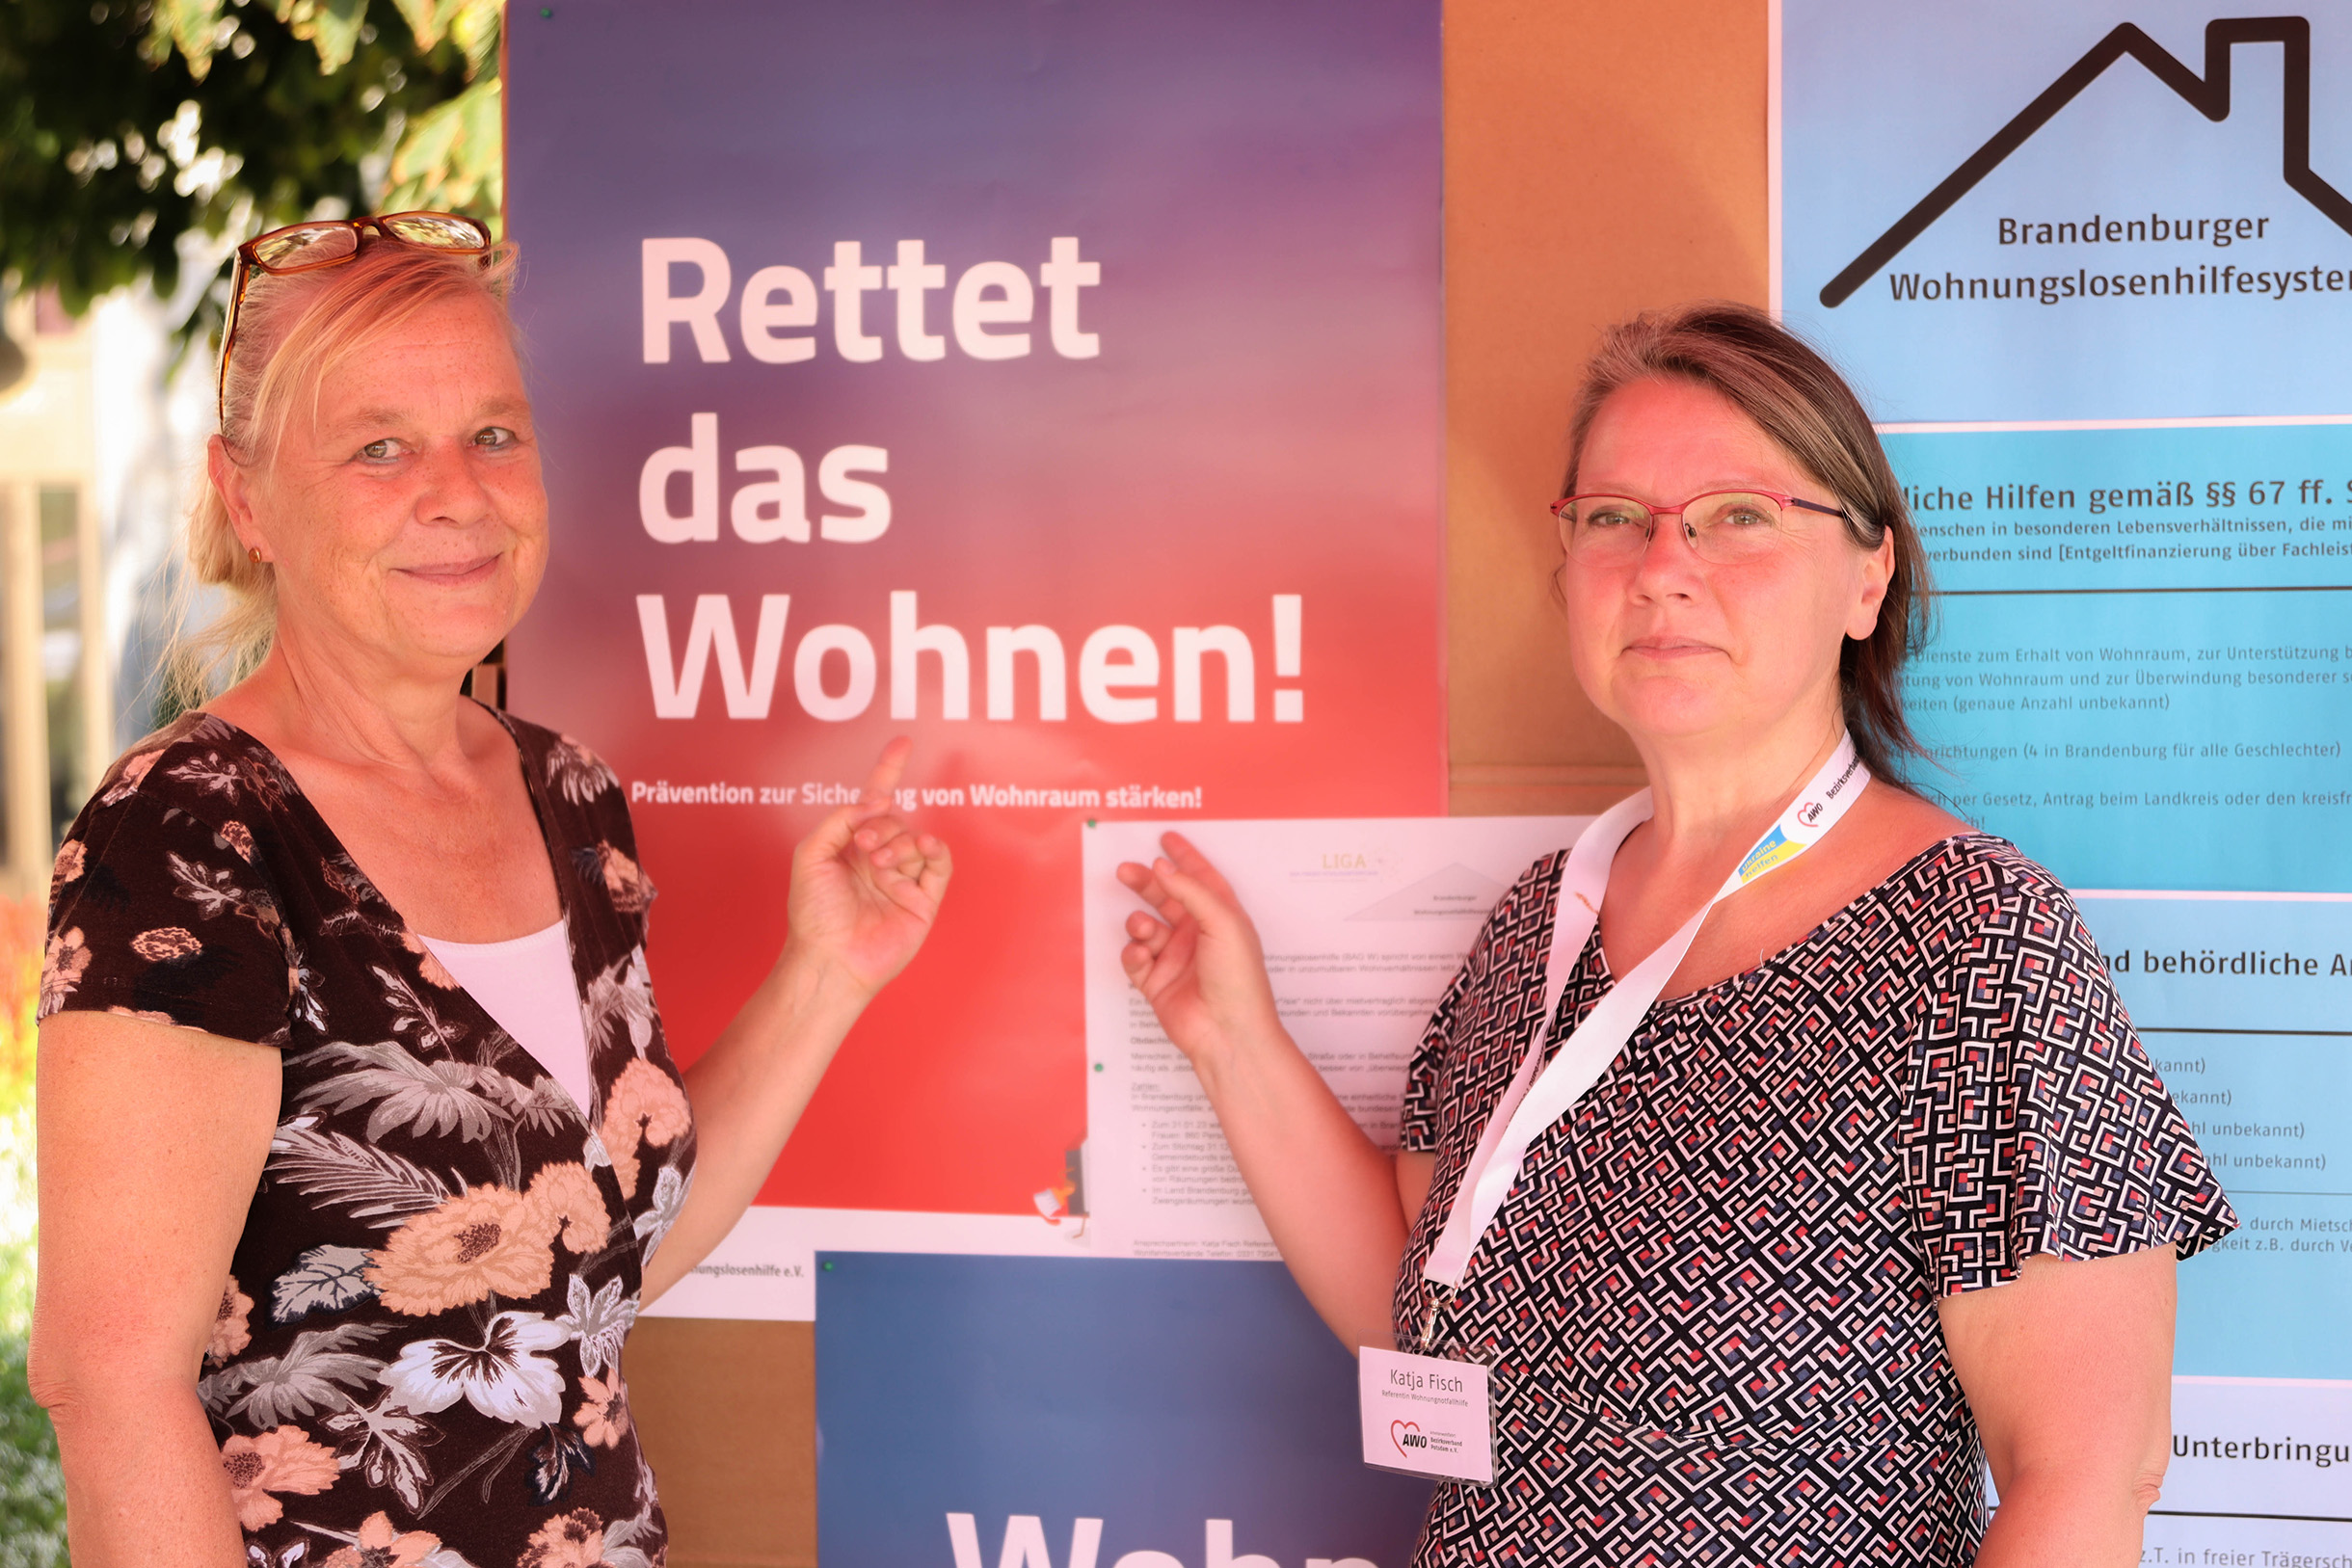 Zwei Frauen stehen vor einer Info-Tafel. An der Tafel sind Informationen zum Thema wohnen vom Brandenburger Wohnungslosenhilfesystem. Beide zeigen auf ein Plakat Text: Rettet das Wohnen!